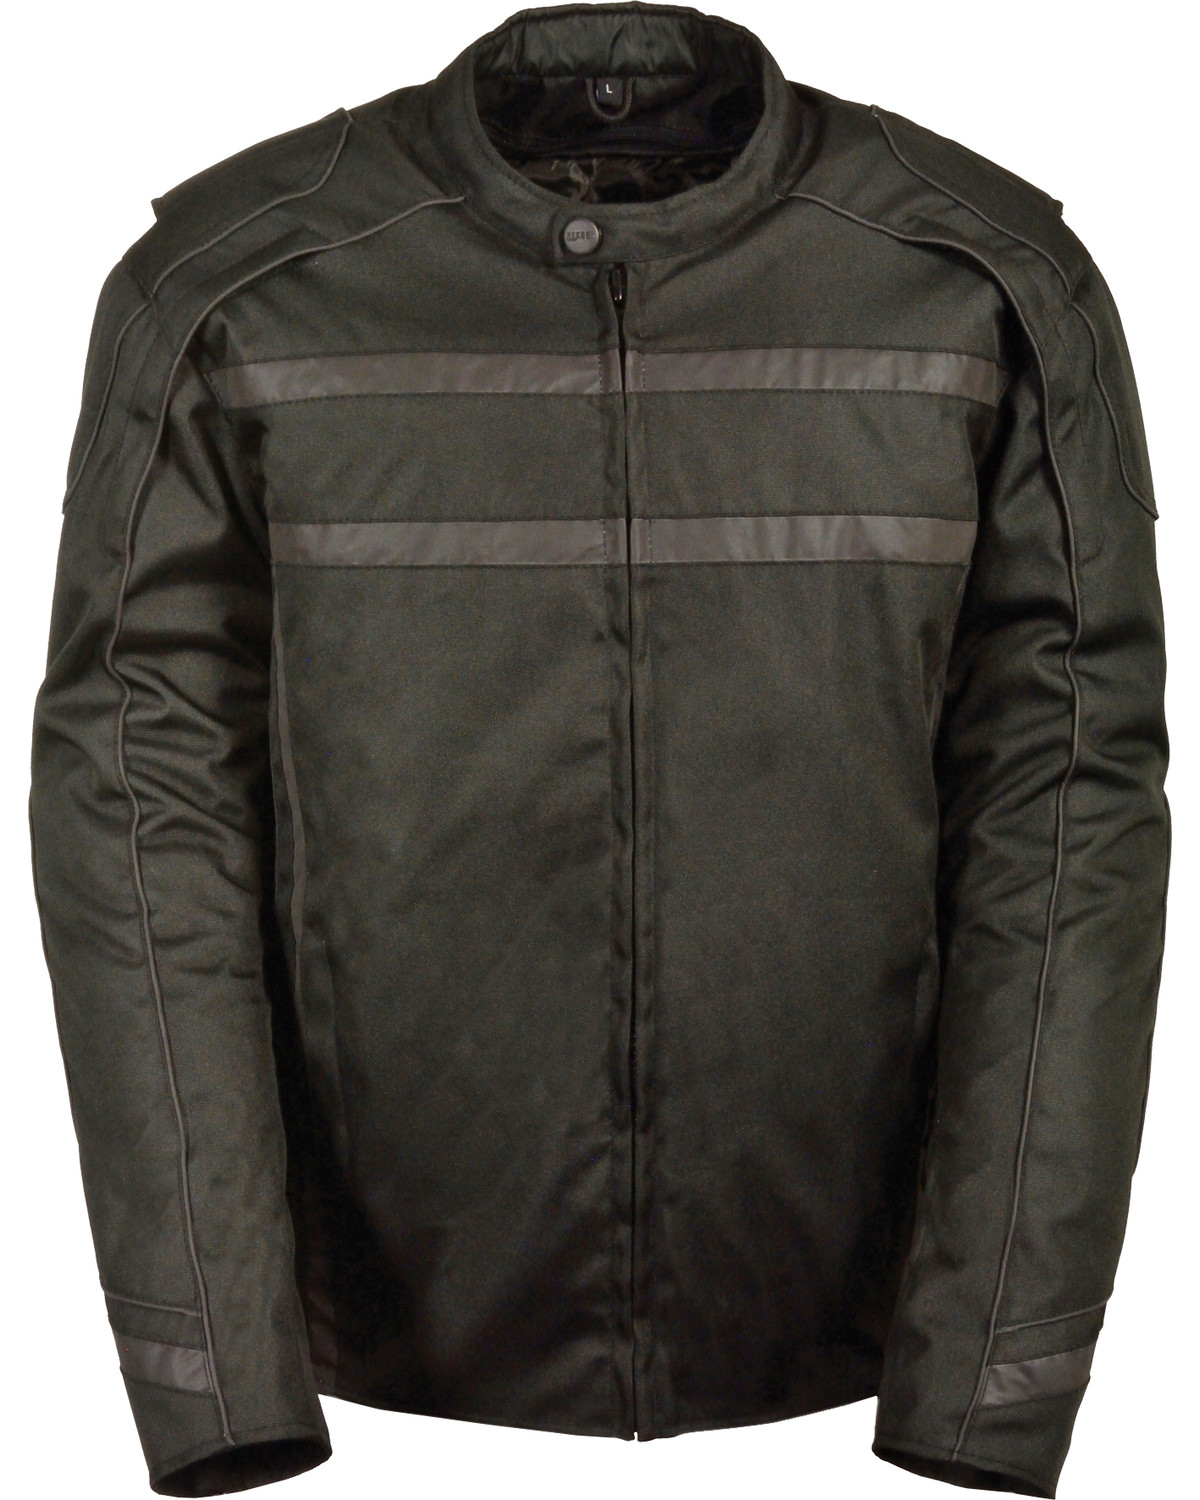 Milwaukee Leather Men's Vented Nylon Reflective Jacket